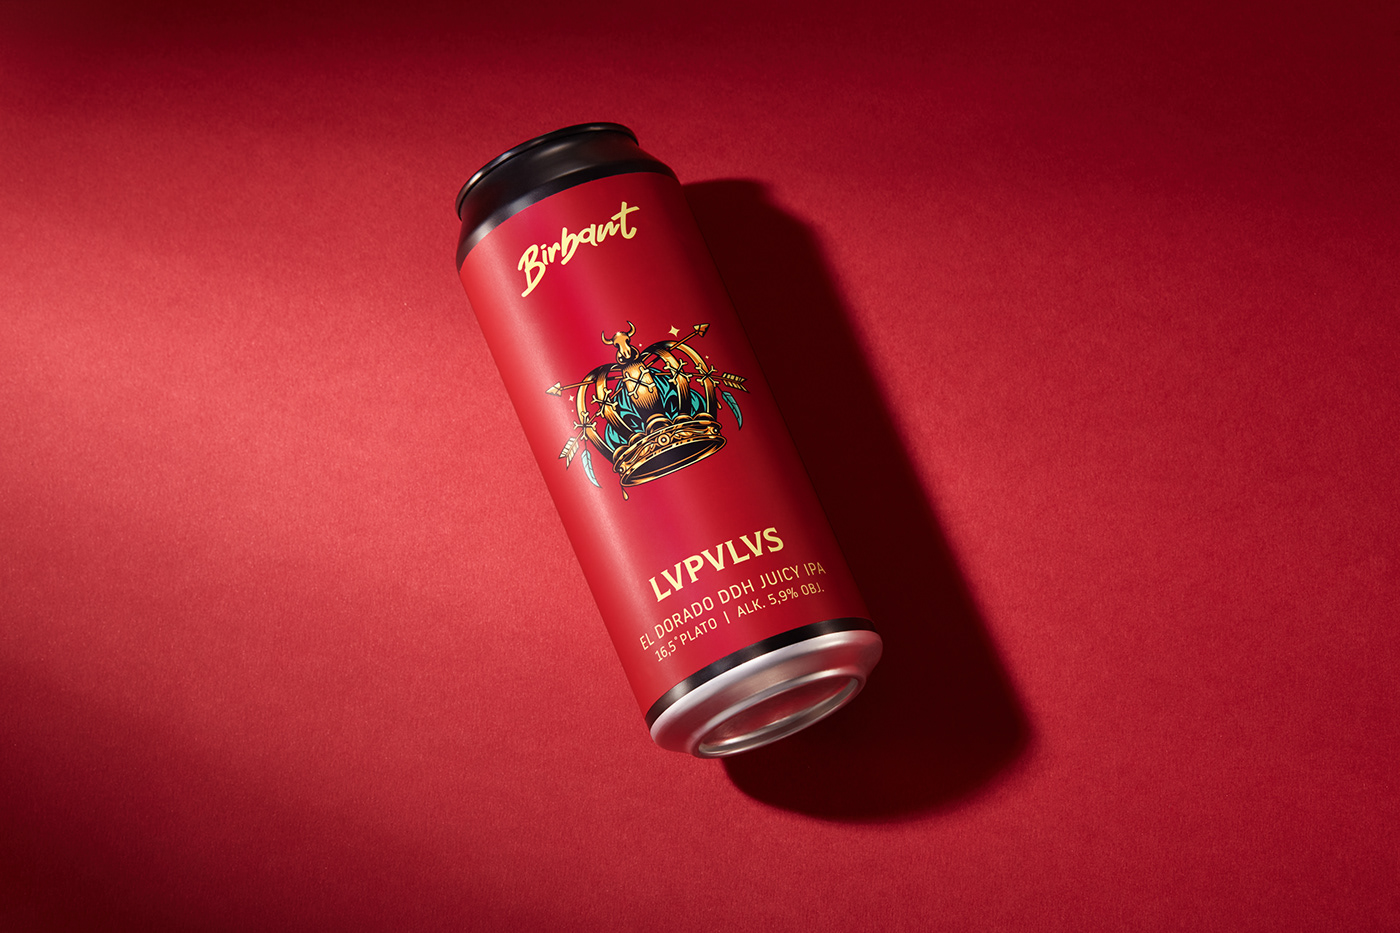 Label design for LVPVLVS Juicy IPA brewed with El Dorado hop.